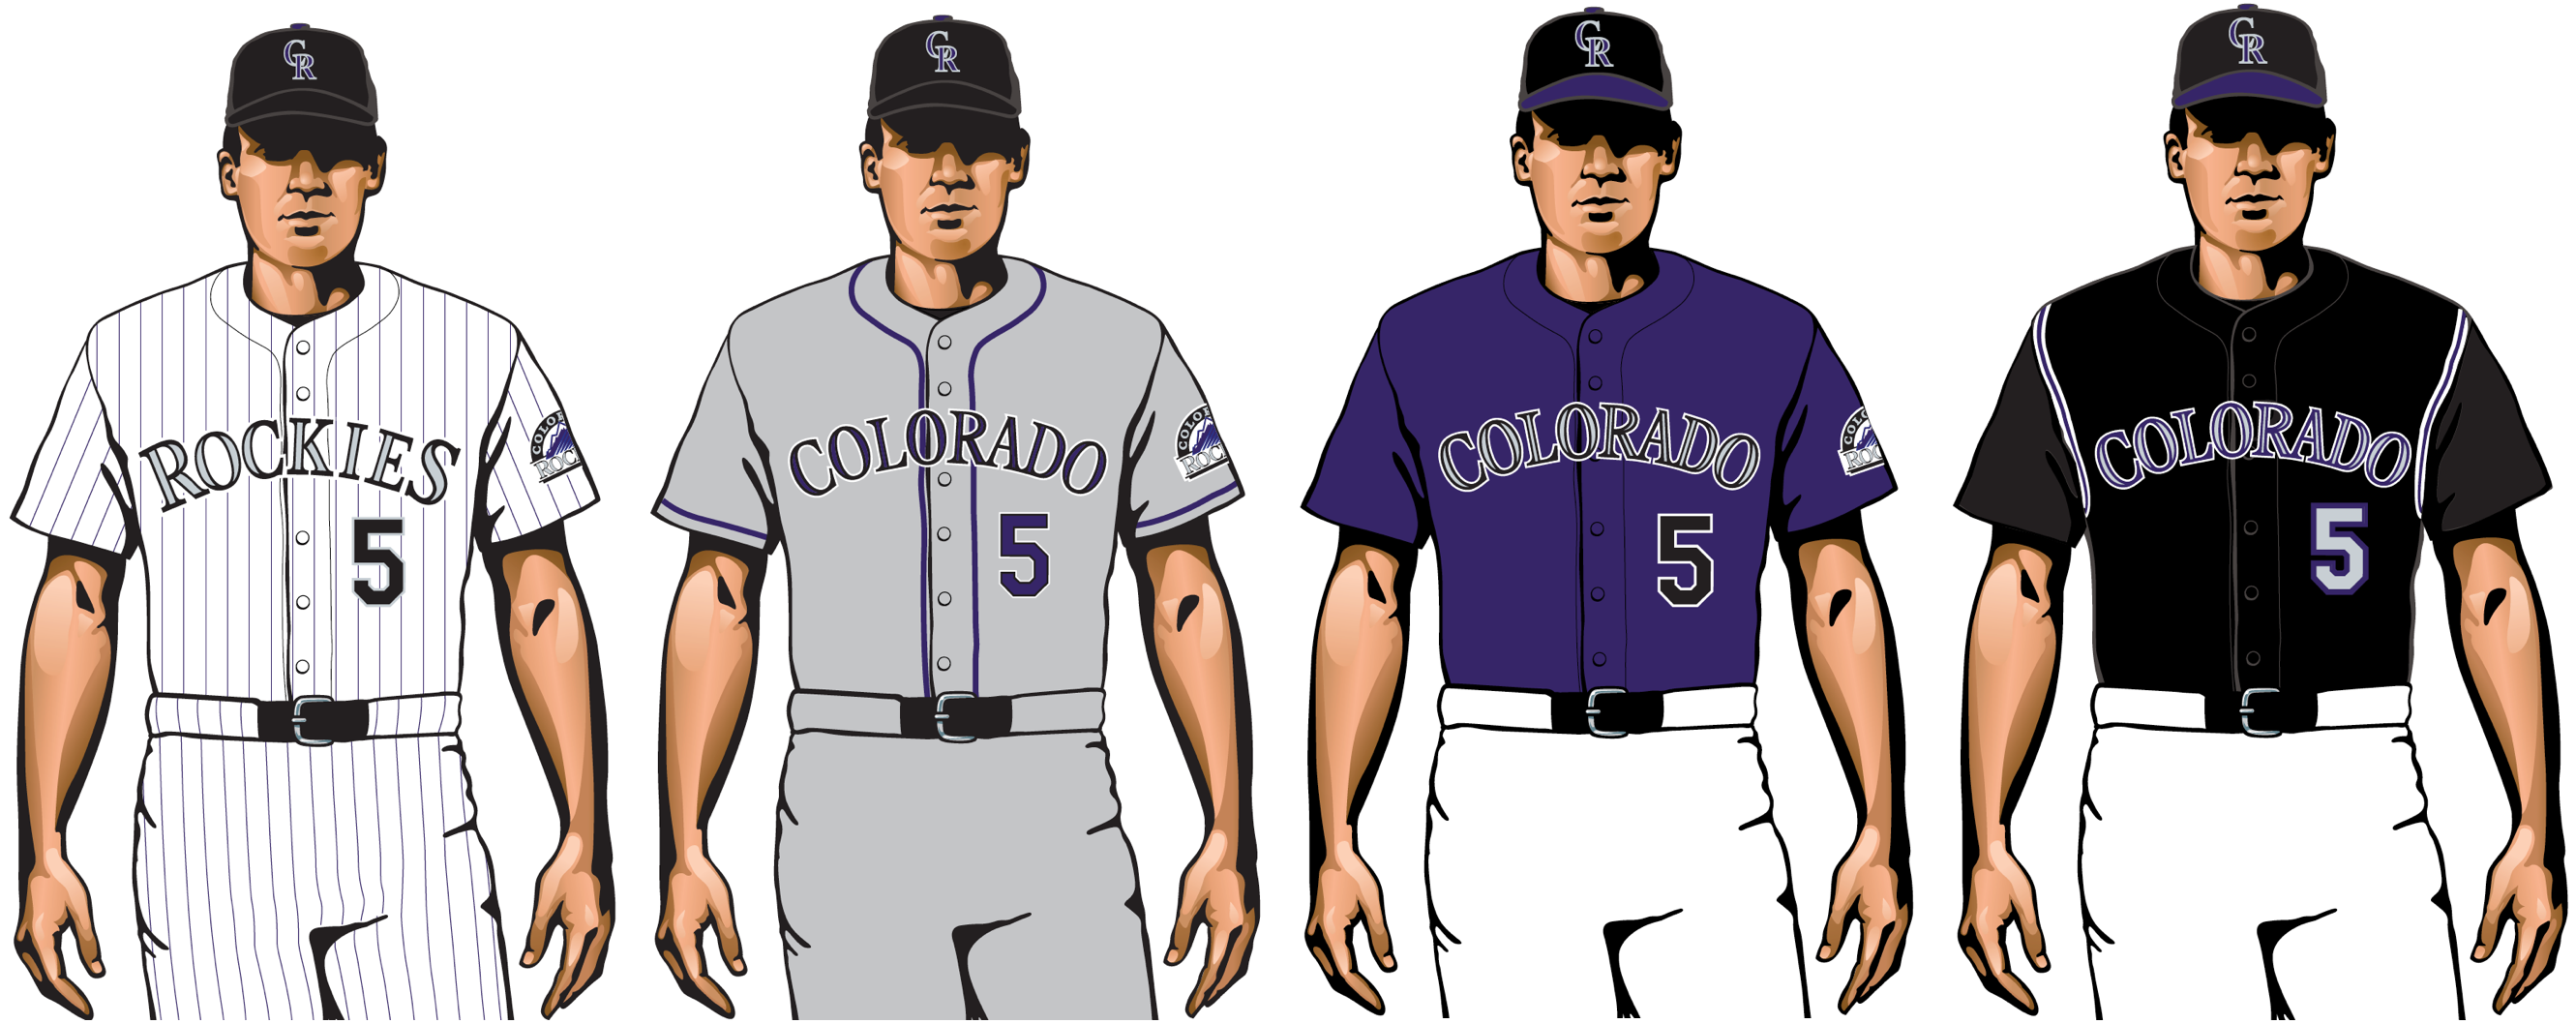 colorado rockies 2020 uniforms